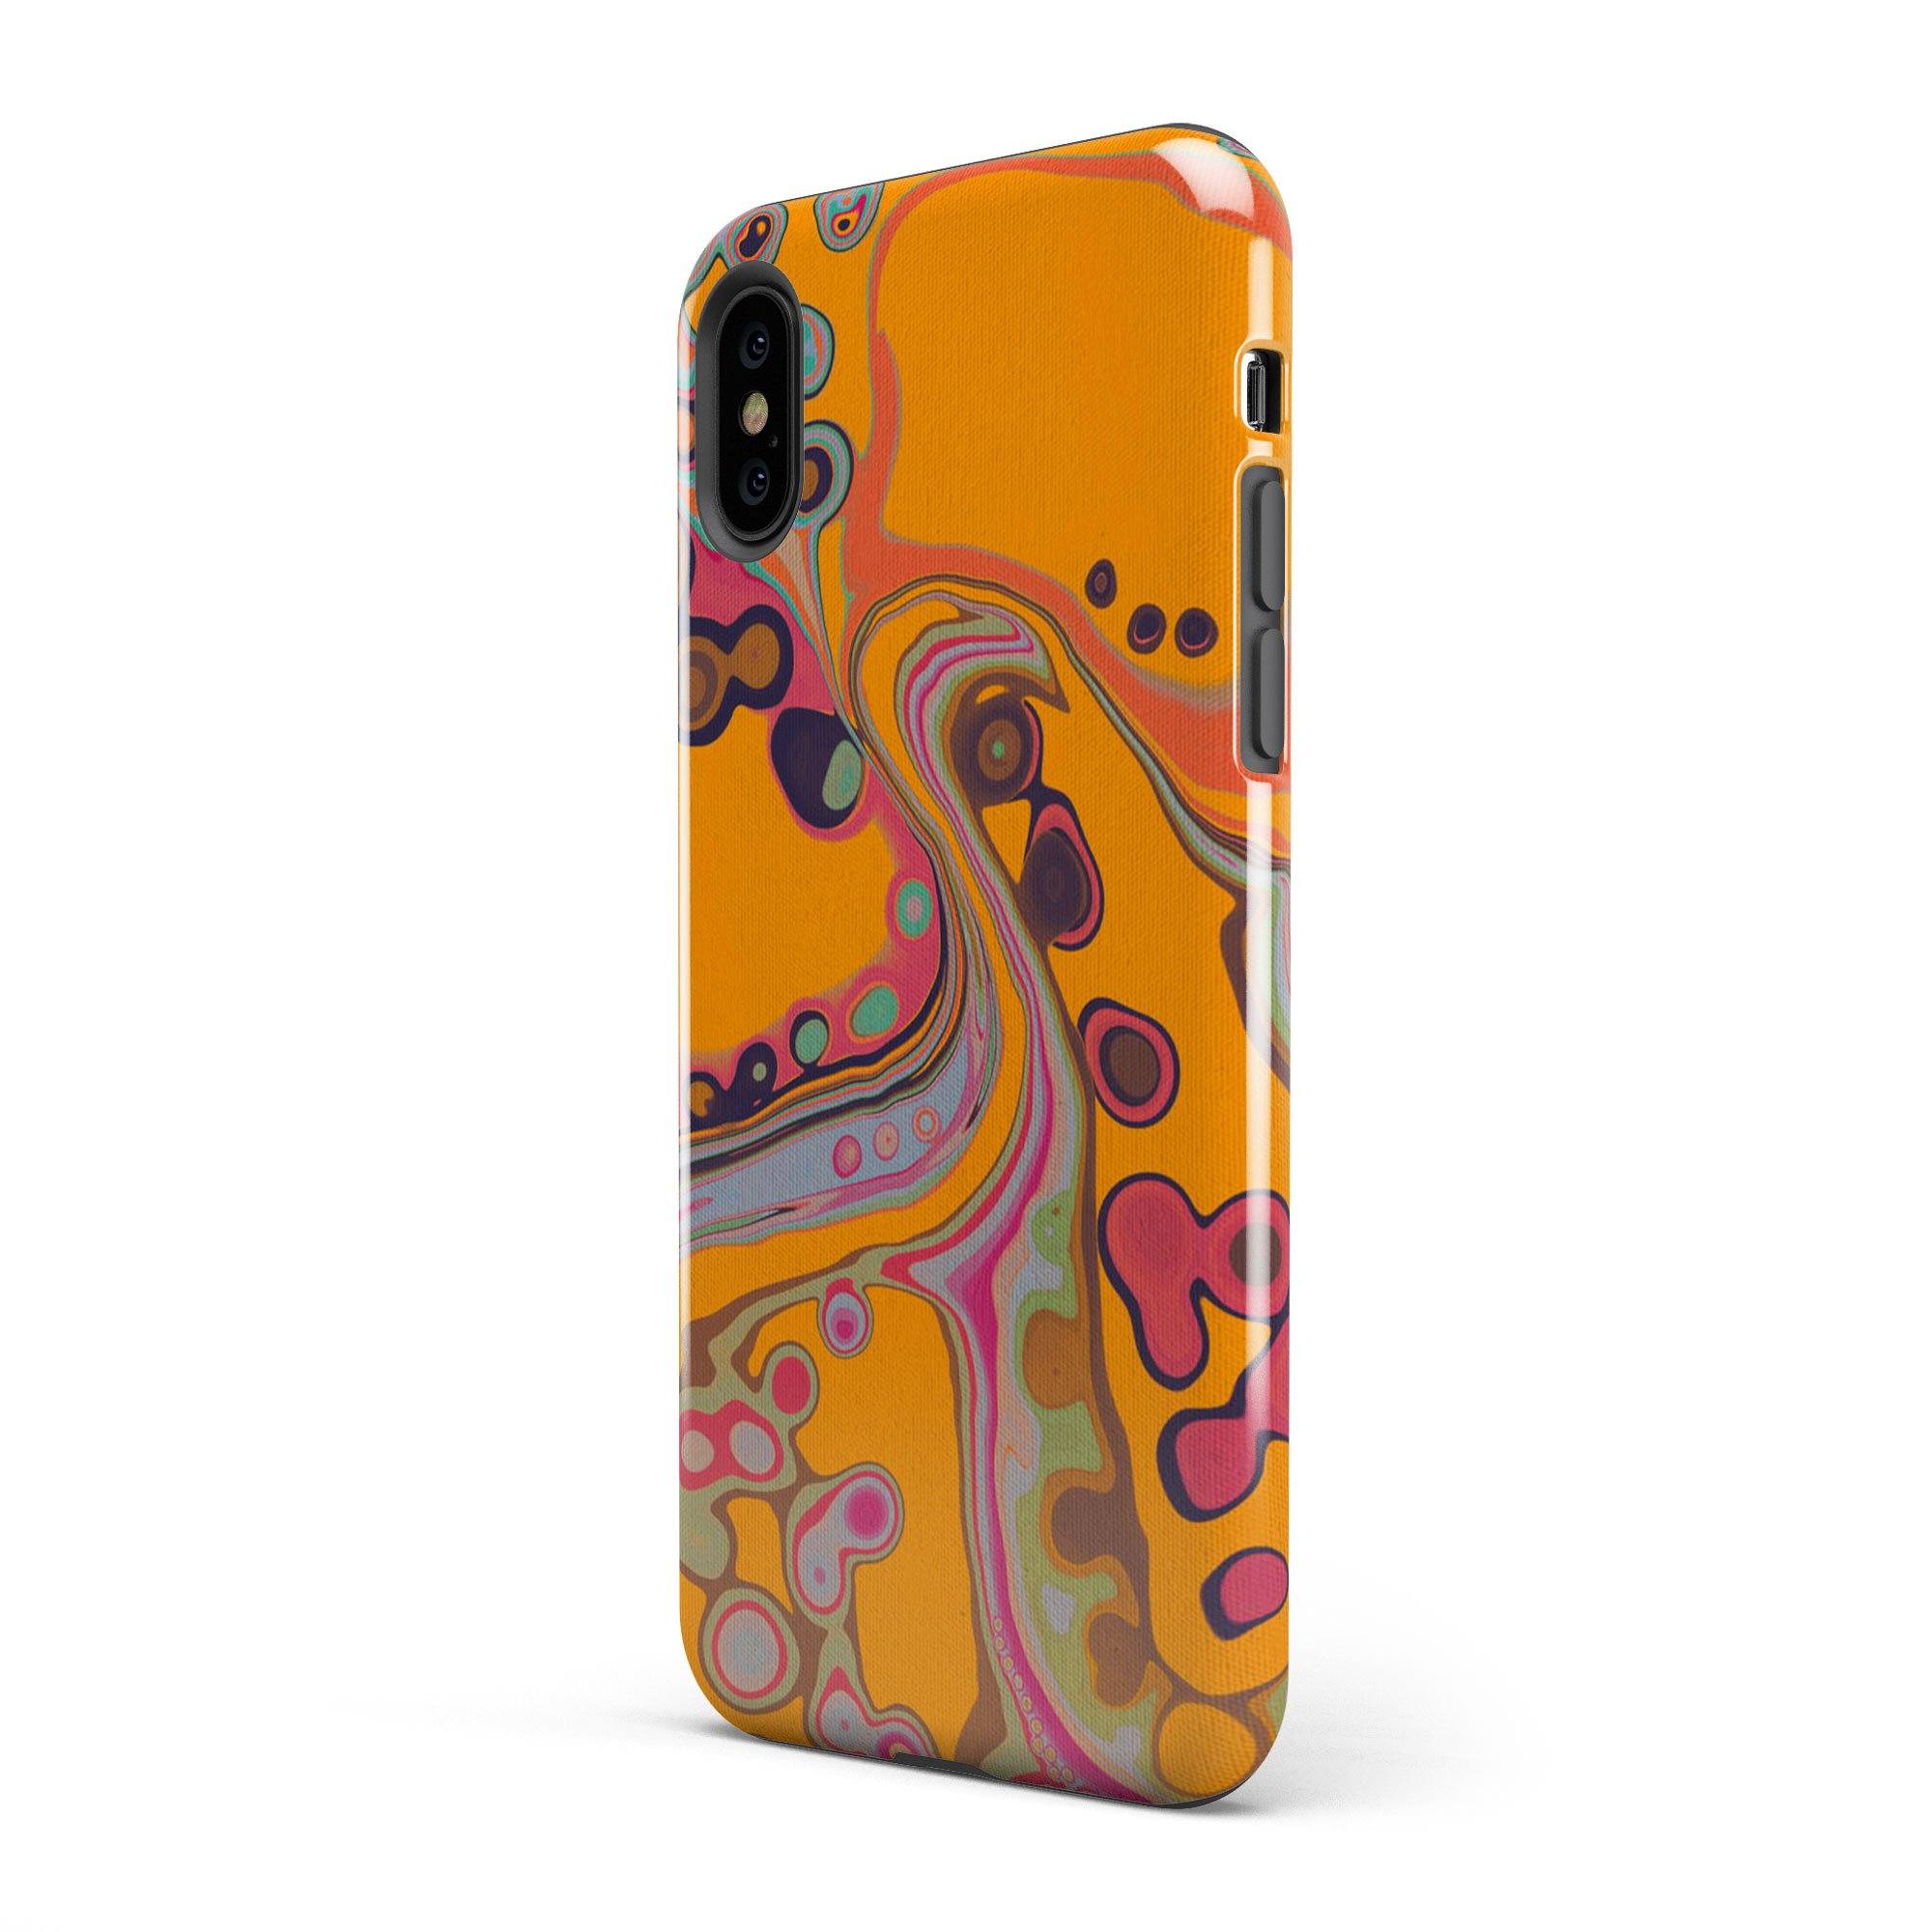 Octopus's Garden iPhone Case